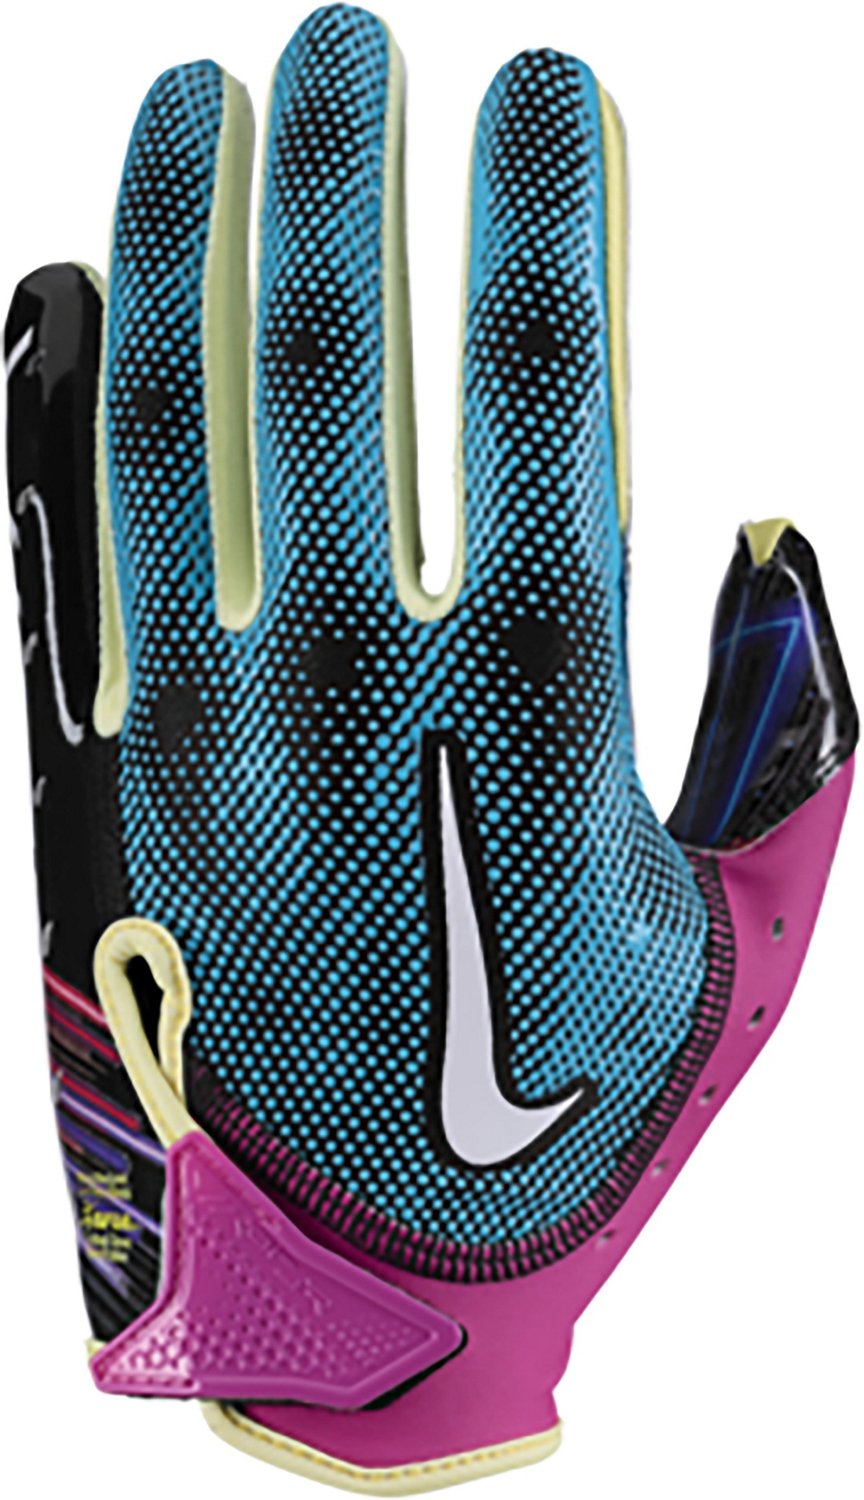 Nike Vapor Jet Kids' Football Gloves.